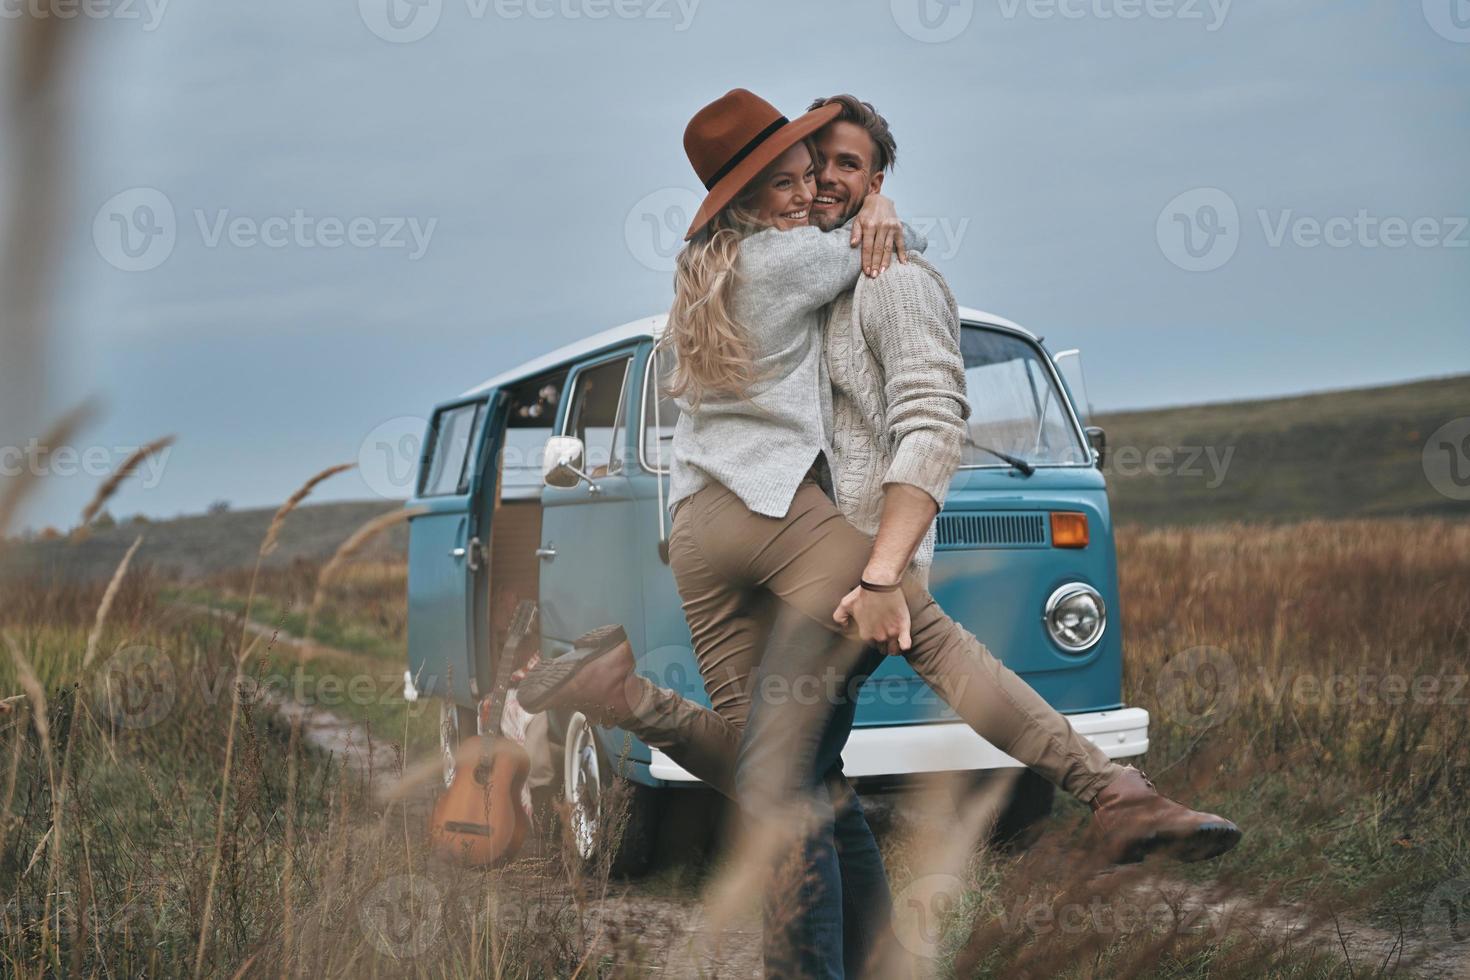 felicidade despreocupada. lindo casal jovem abraçando e sorrindo em pé perto da mini van azul estilo retrô foto